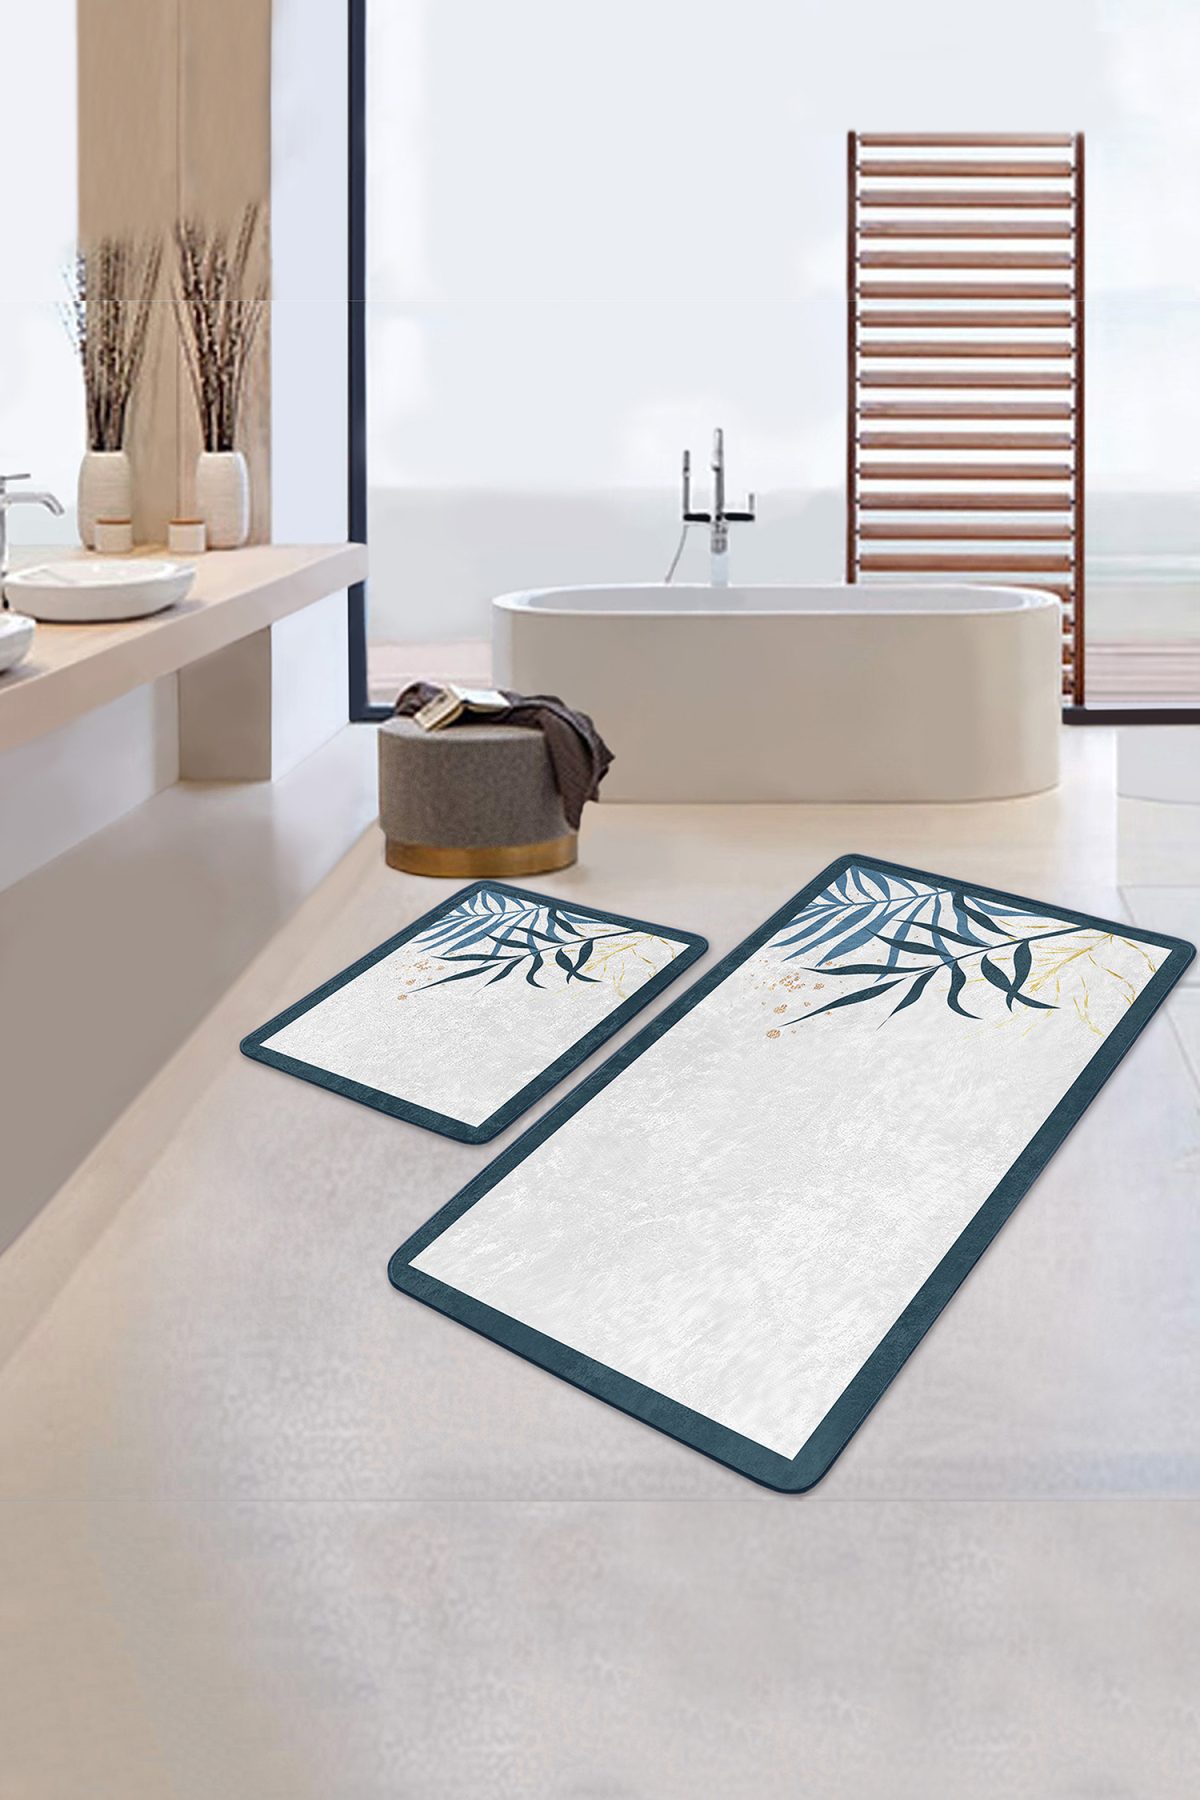 Beyaz Zeminde Renkli Yaprak Özel Tasarım Dijital Baskılı 2'li Kaymaz Tabanlı Banyo & Mutfak Paspas Takımı Realhomes